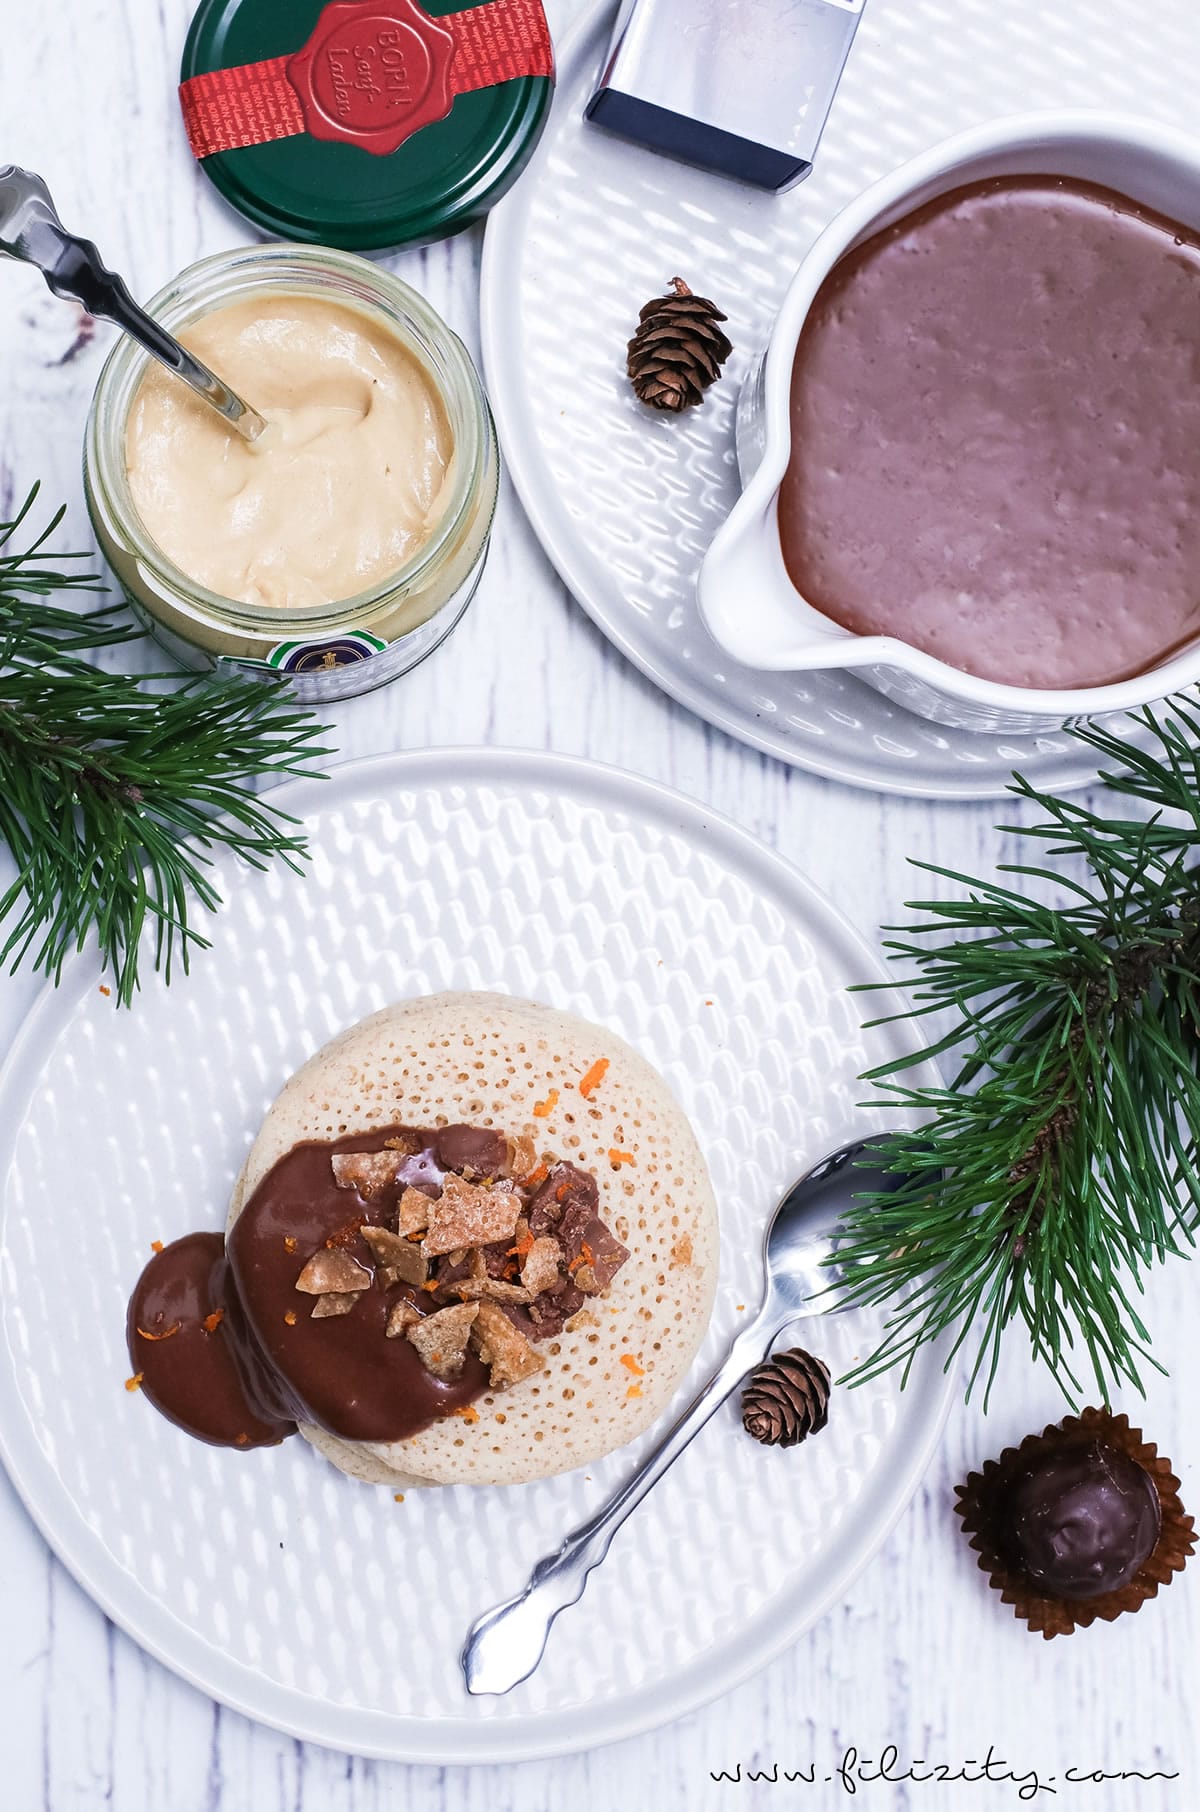 Weihnachts-Dessert: Rezept für Marokkanische Pfannkuchen (Baghrir) mit Schoko-Orangen-Senf-Soße, Orangenkaramell und Senfpralinen | Filizity.com | Food-Blog aus dem Rheinland #weihnachten #dessert #BORNsinternational #BORN